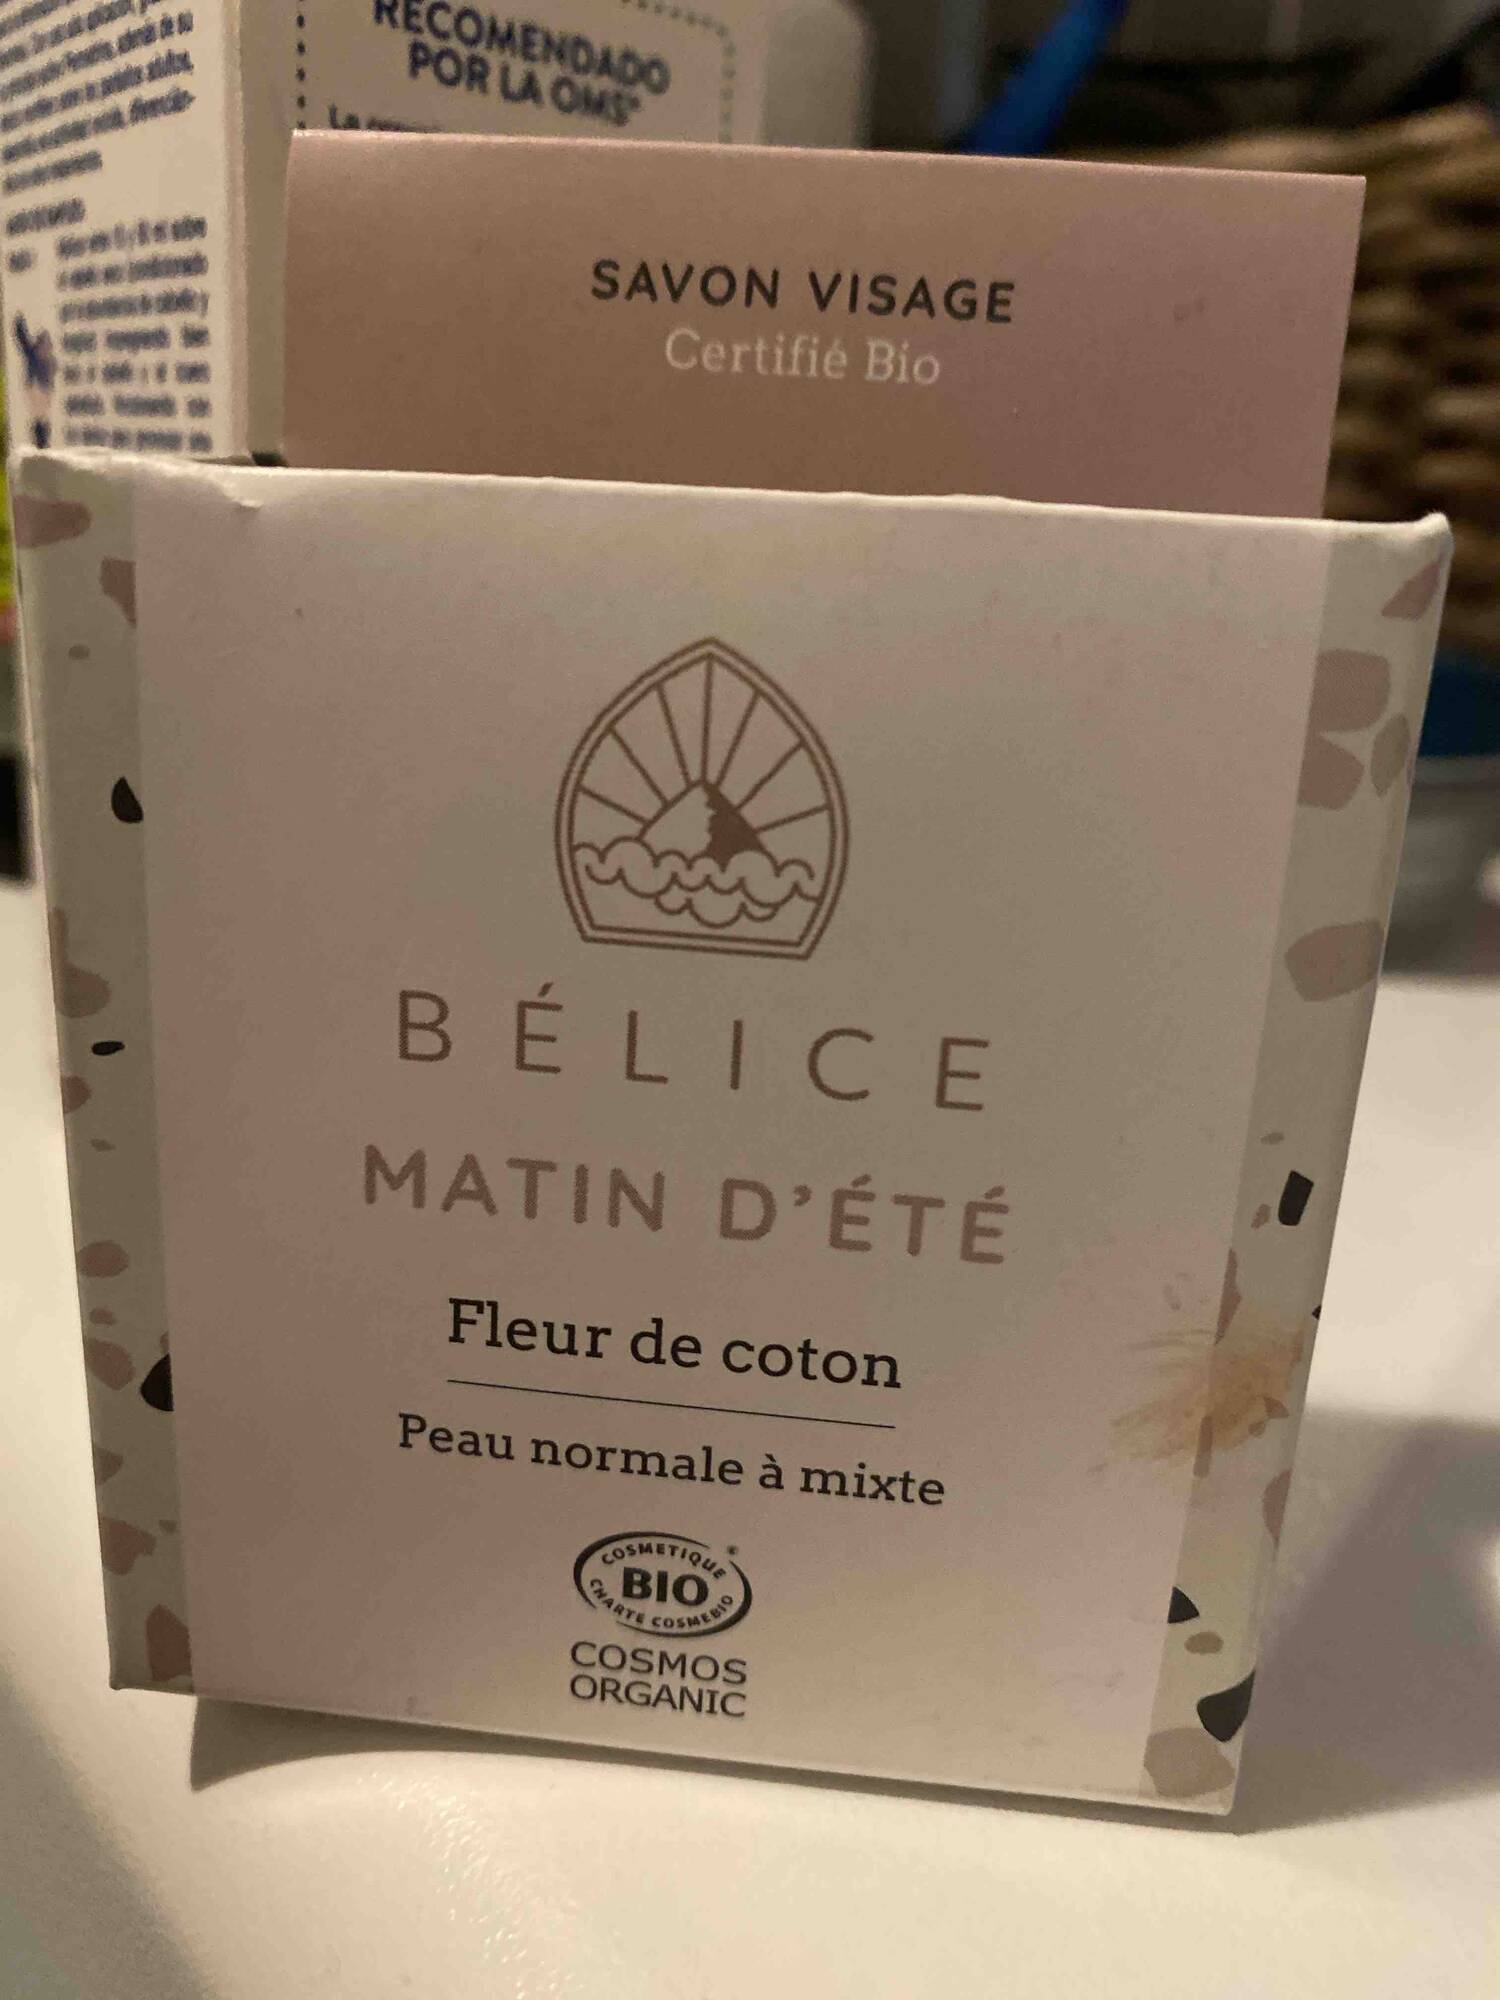 BELICE - Matin d'été - Savon visage fleur de coton 